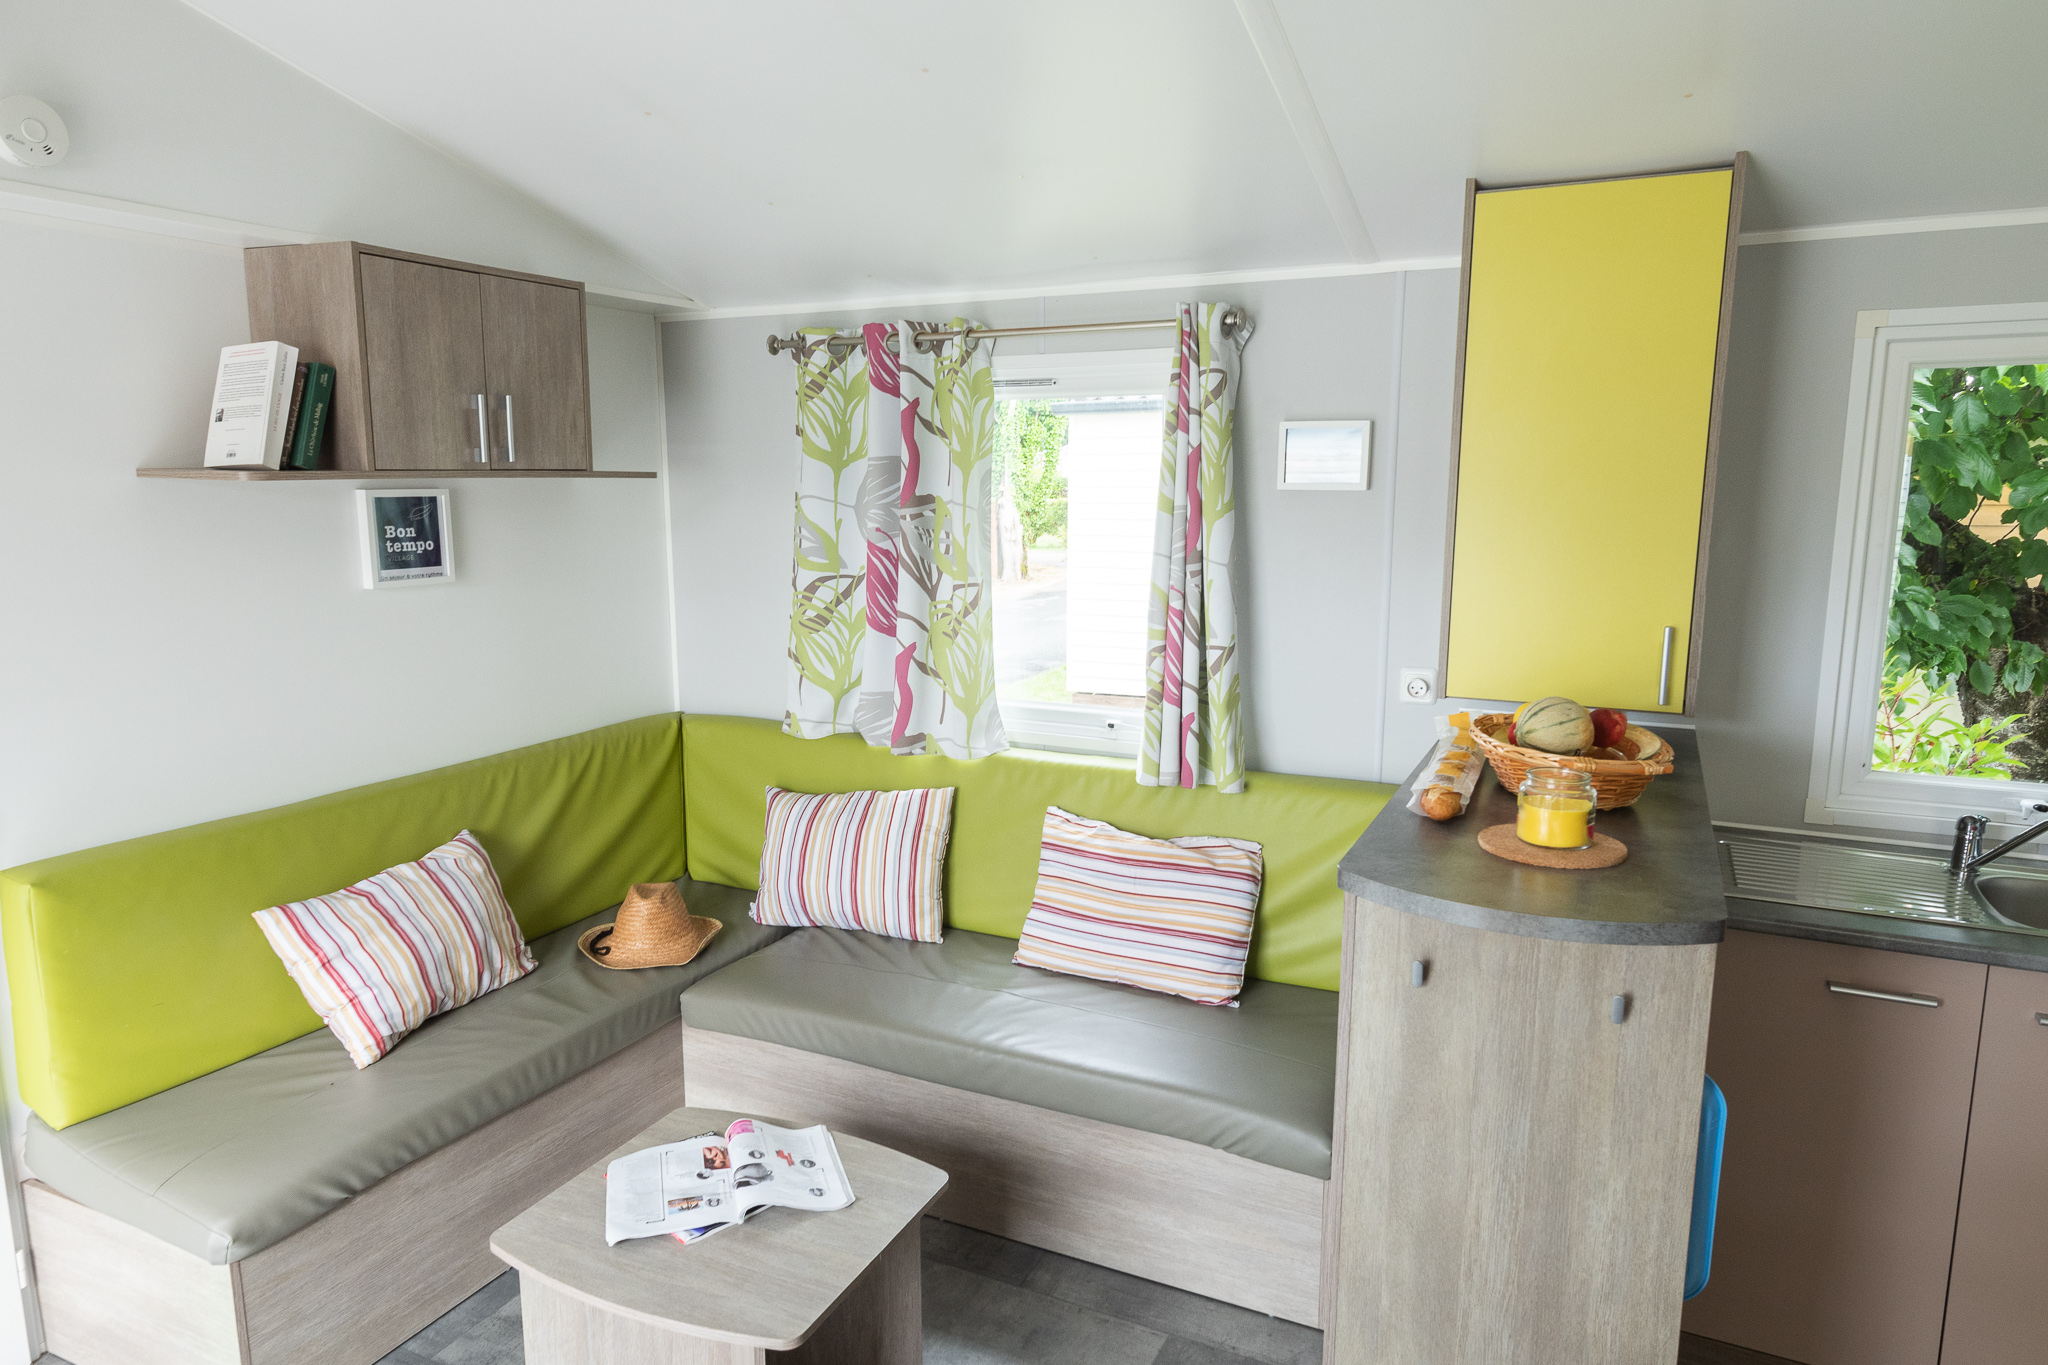 Cottage Premium – 40 m² – 2 badkamers – 3 slaapkamers 4/6 pers.